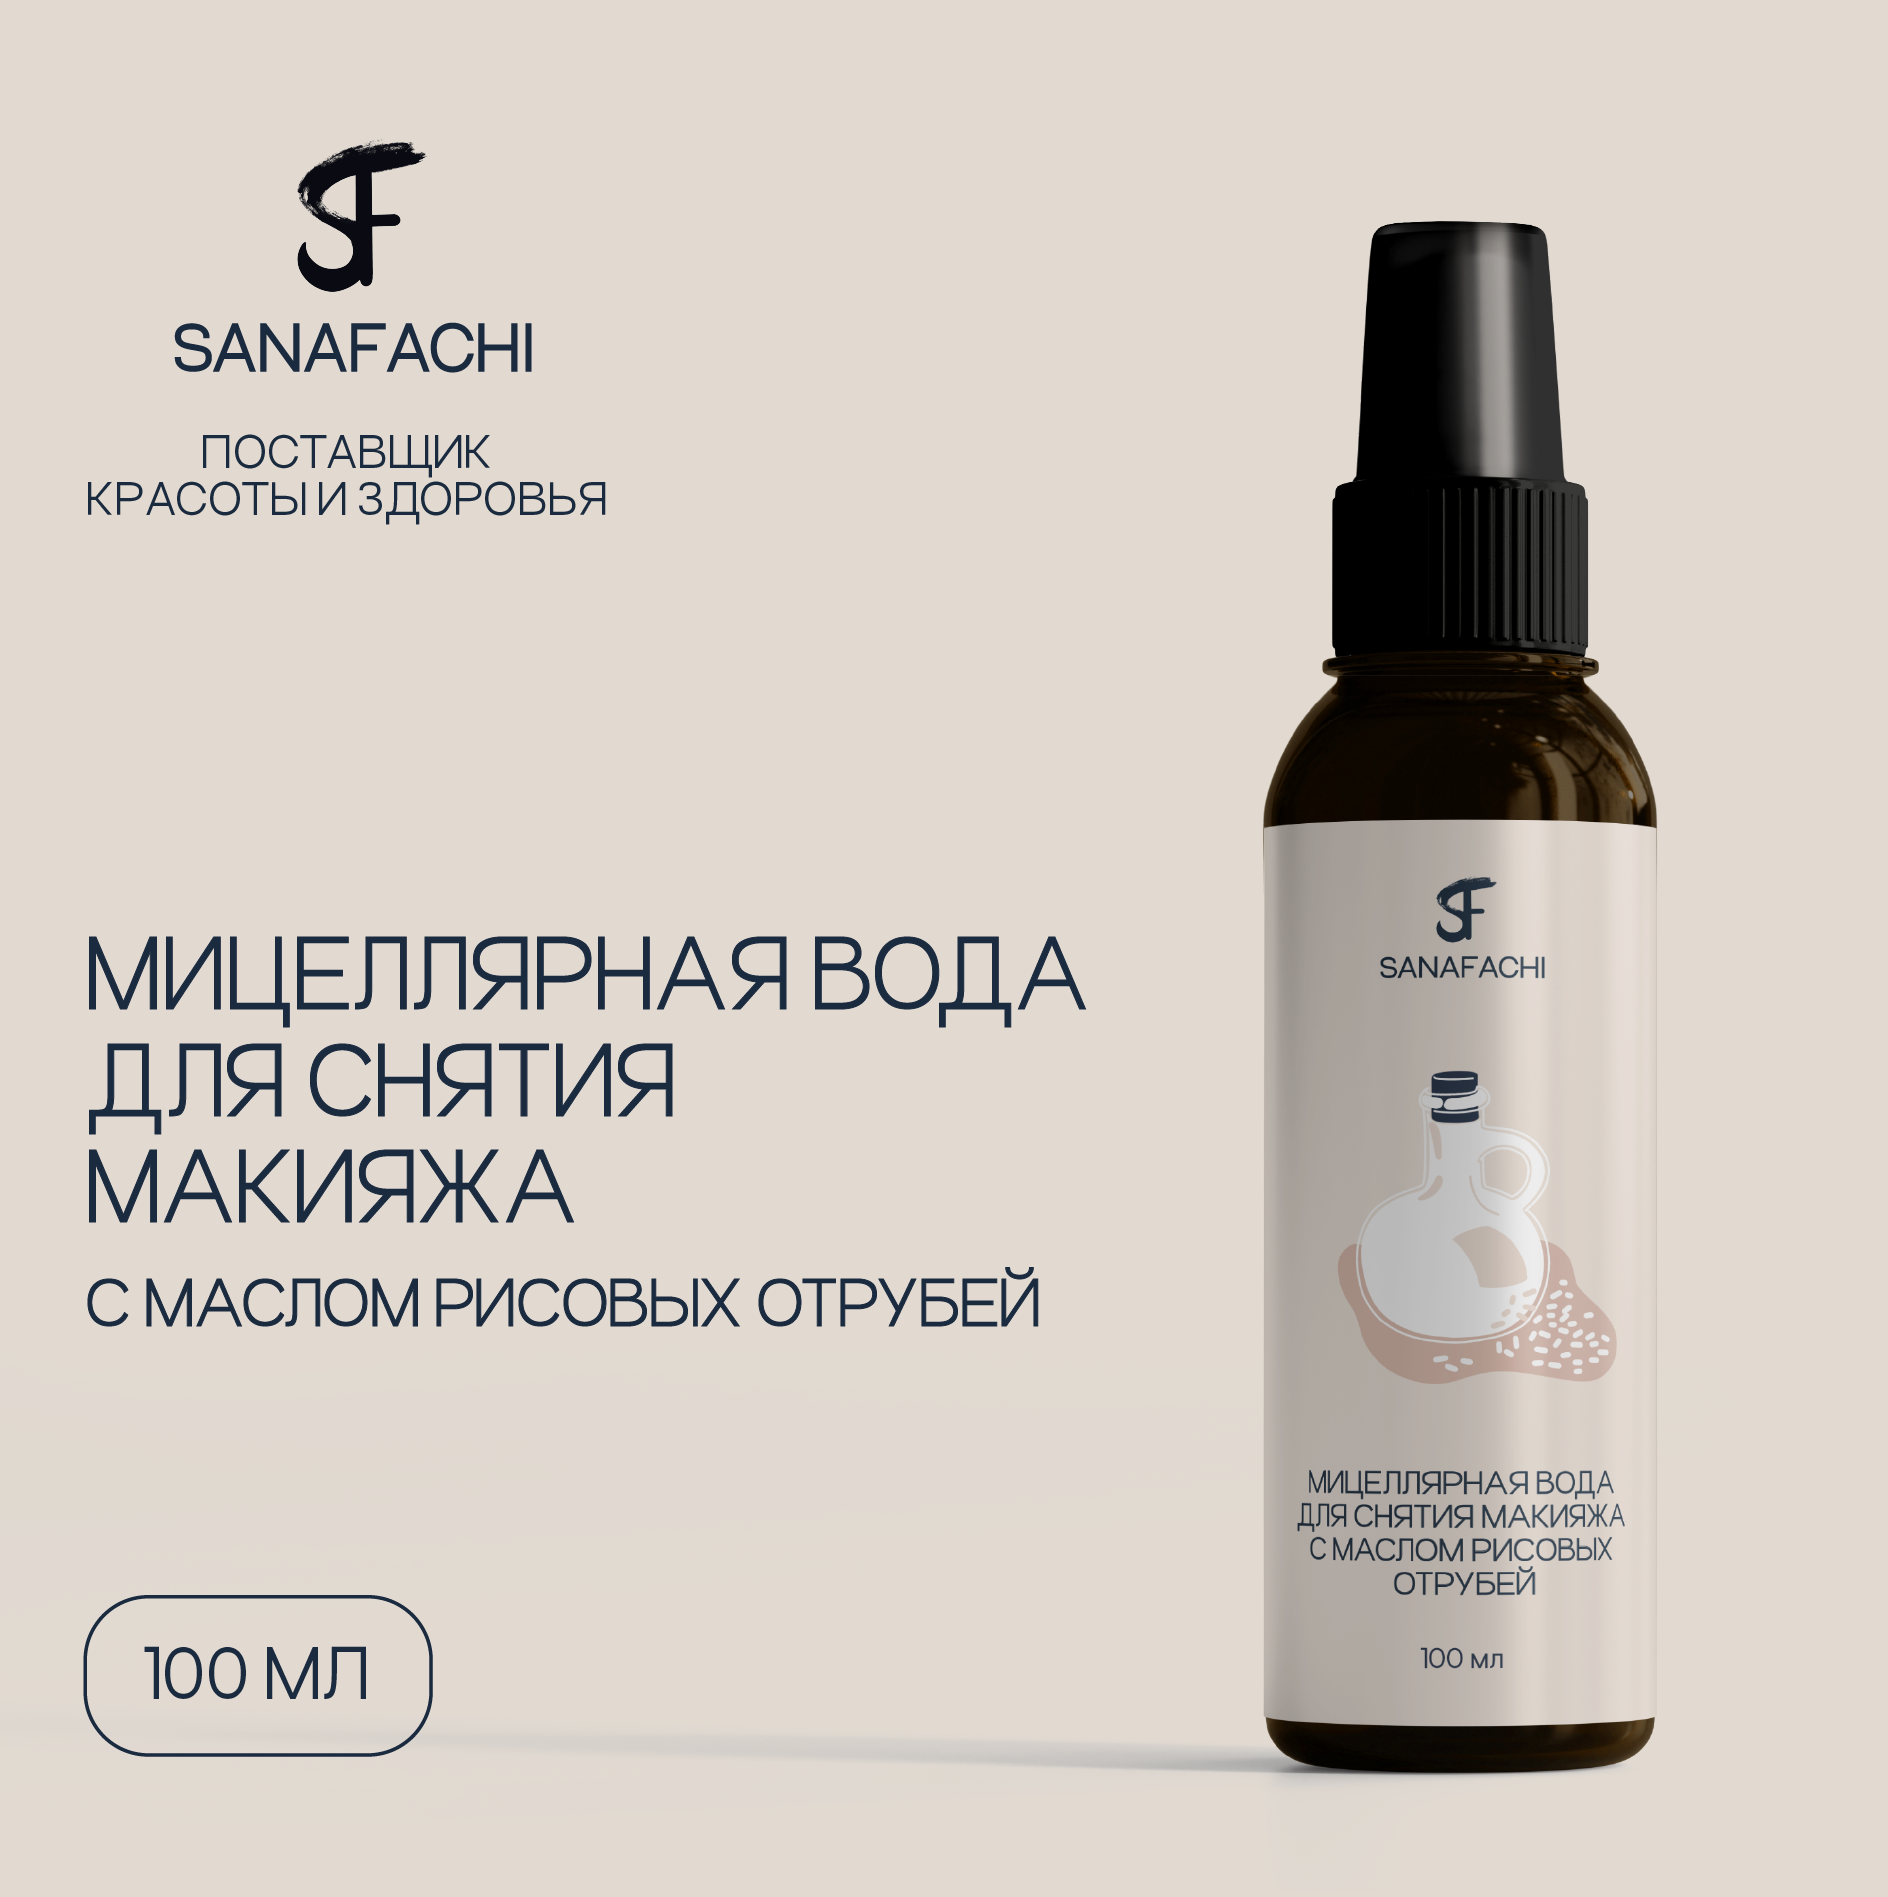 Мицеллярная вода для снятия макияжа с маслом рисовых отрубей SANAFACHI объем 100мл